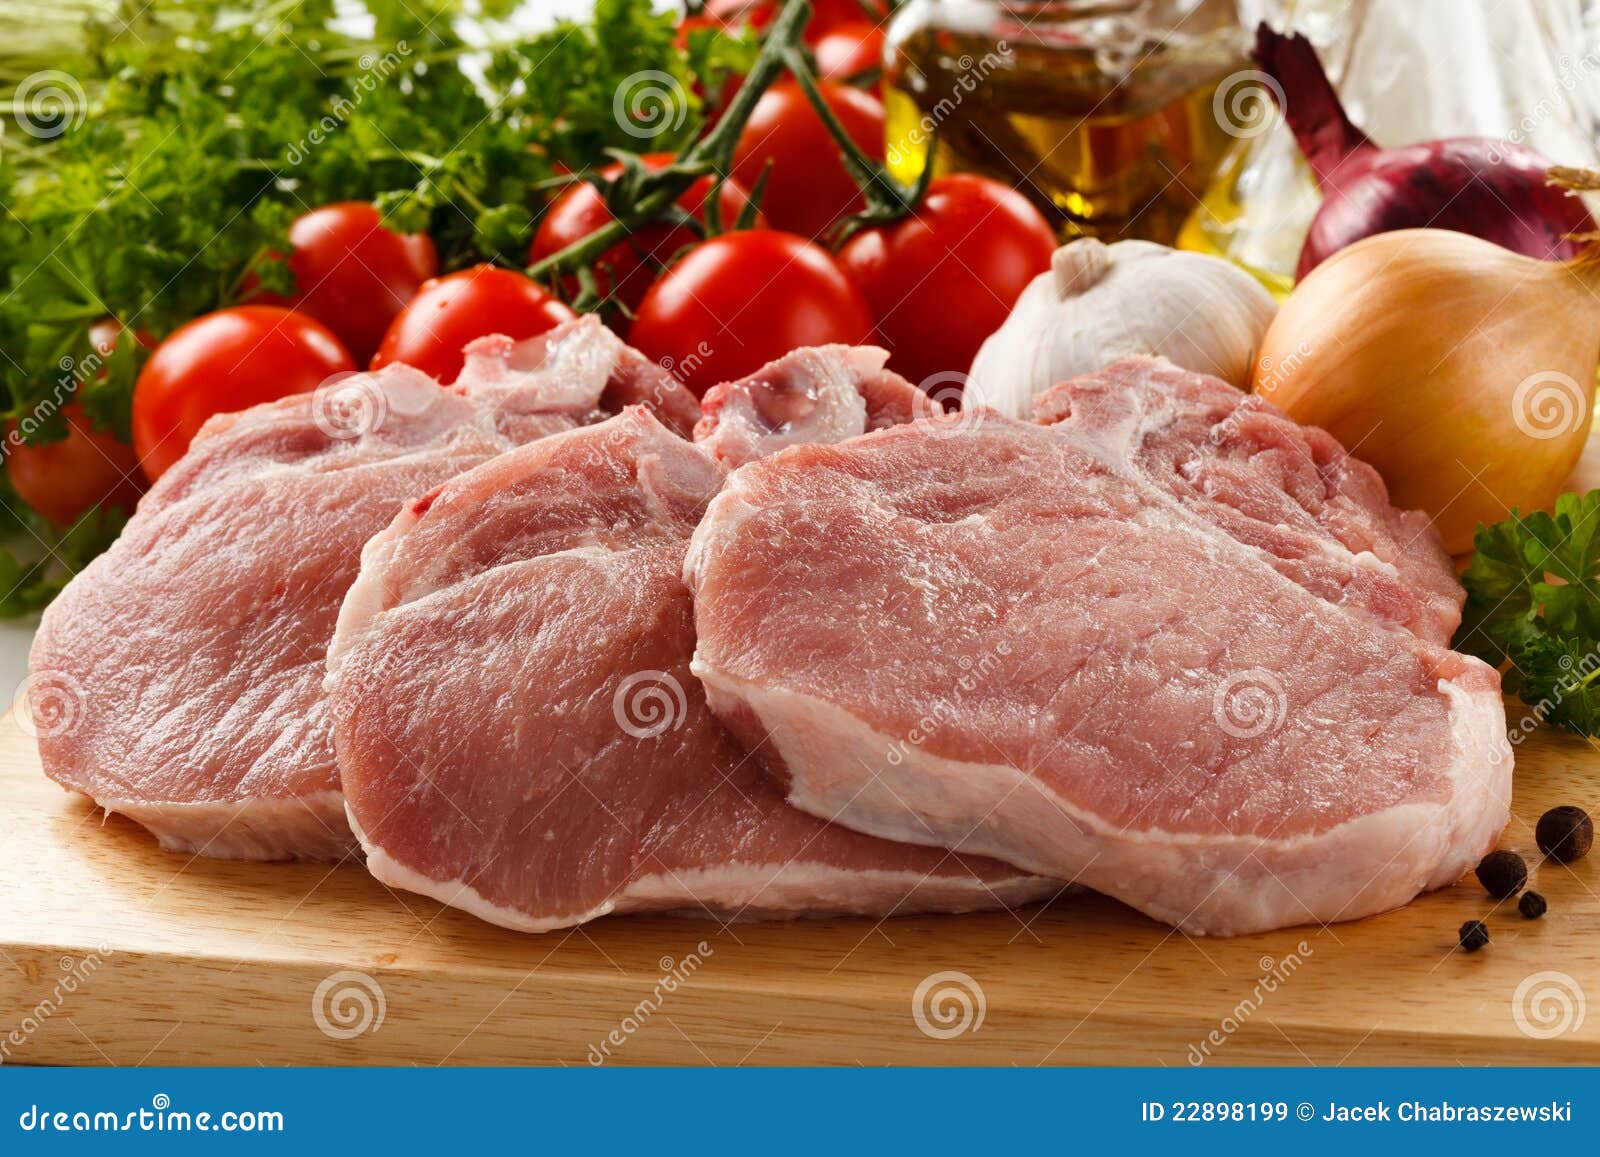 Постное свиное мясо, что это такое фото